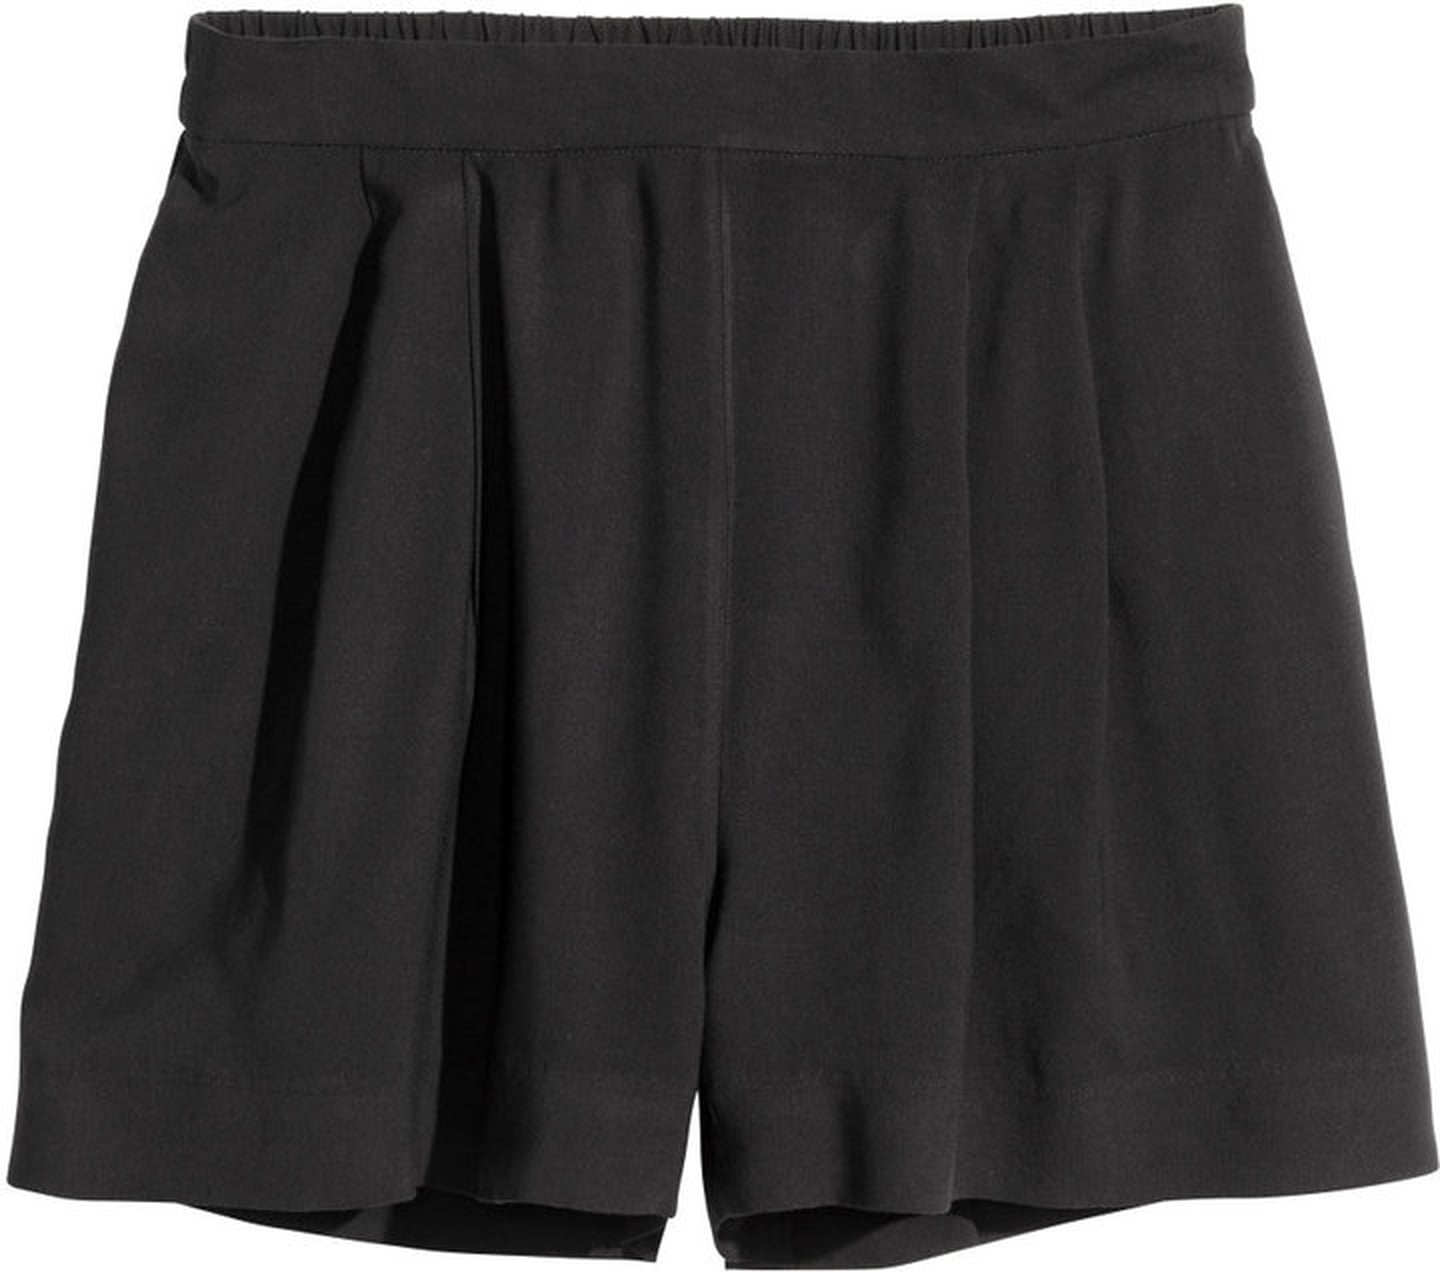 Shorts That Aren't Cutoffs | POPSUGAR Fashion